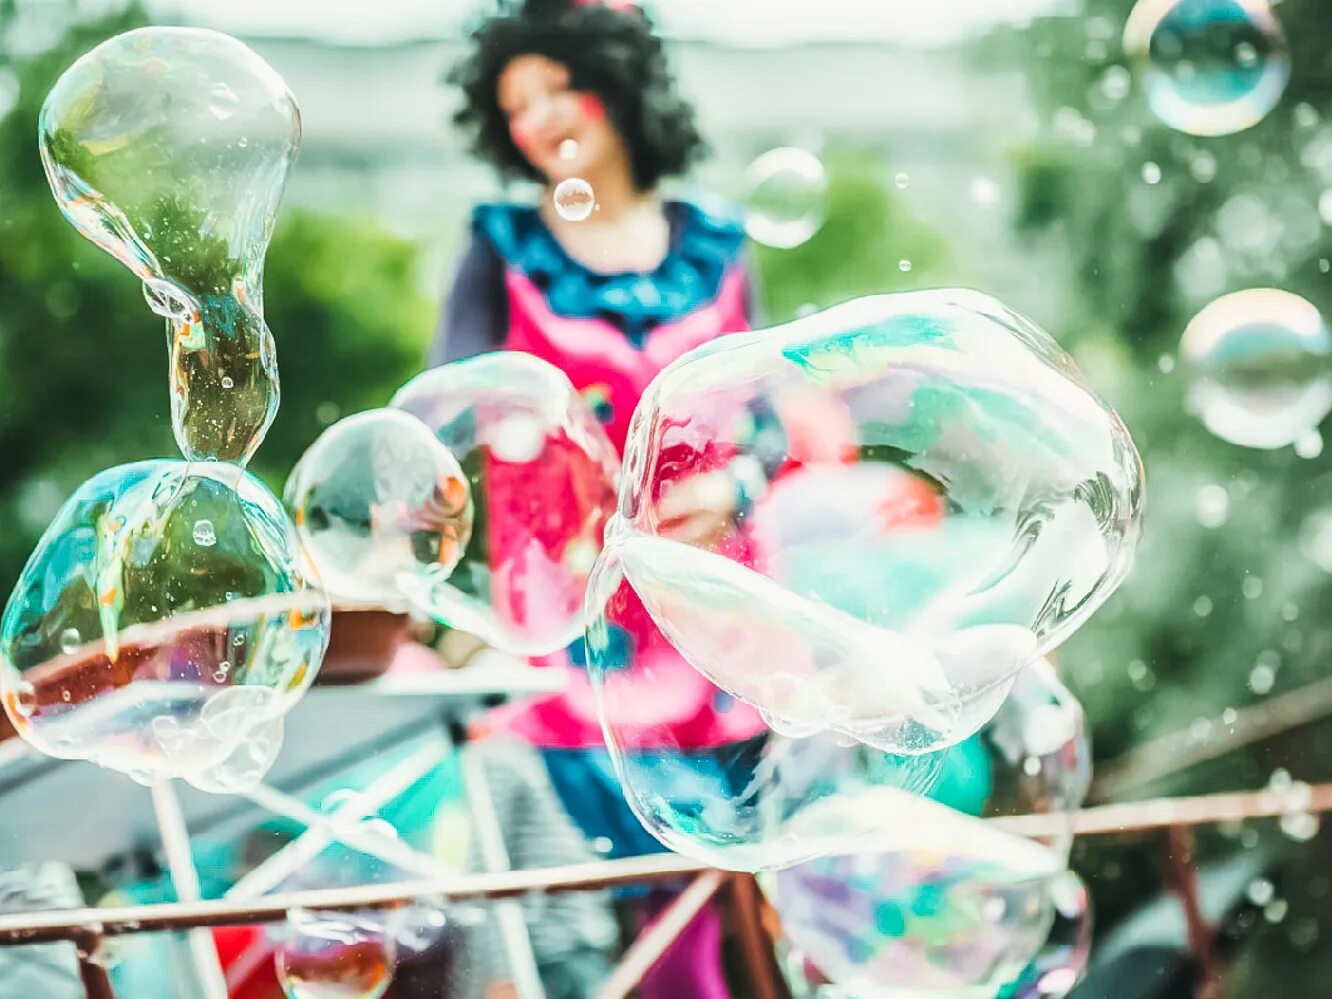 Мыльные пузыри. Шоу мыльных пузырей. Фотосессия с мыльными пузырями. Фестиваль мыльных пузырей. Мыльные шоу на день рождения